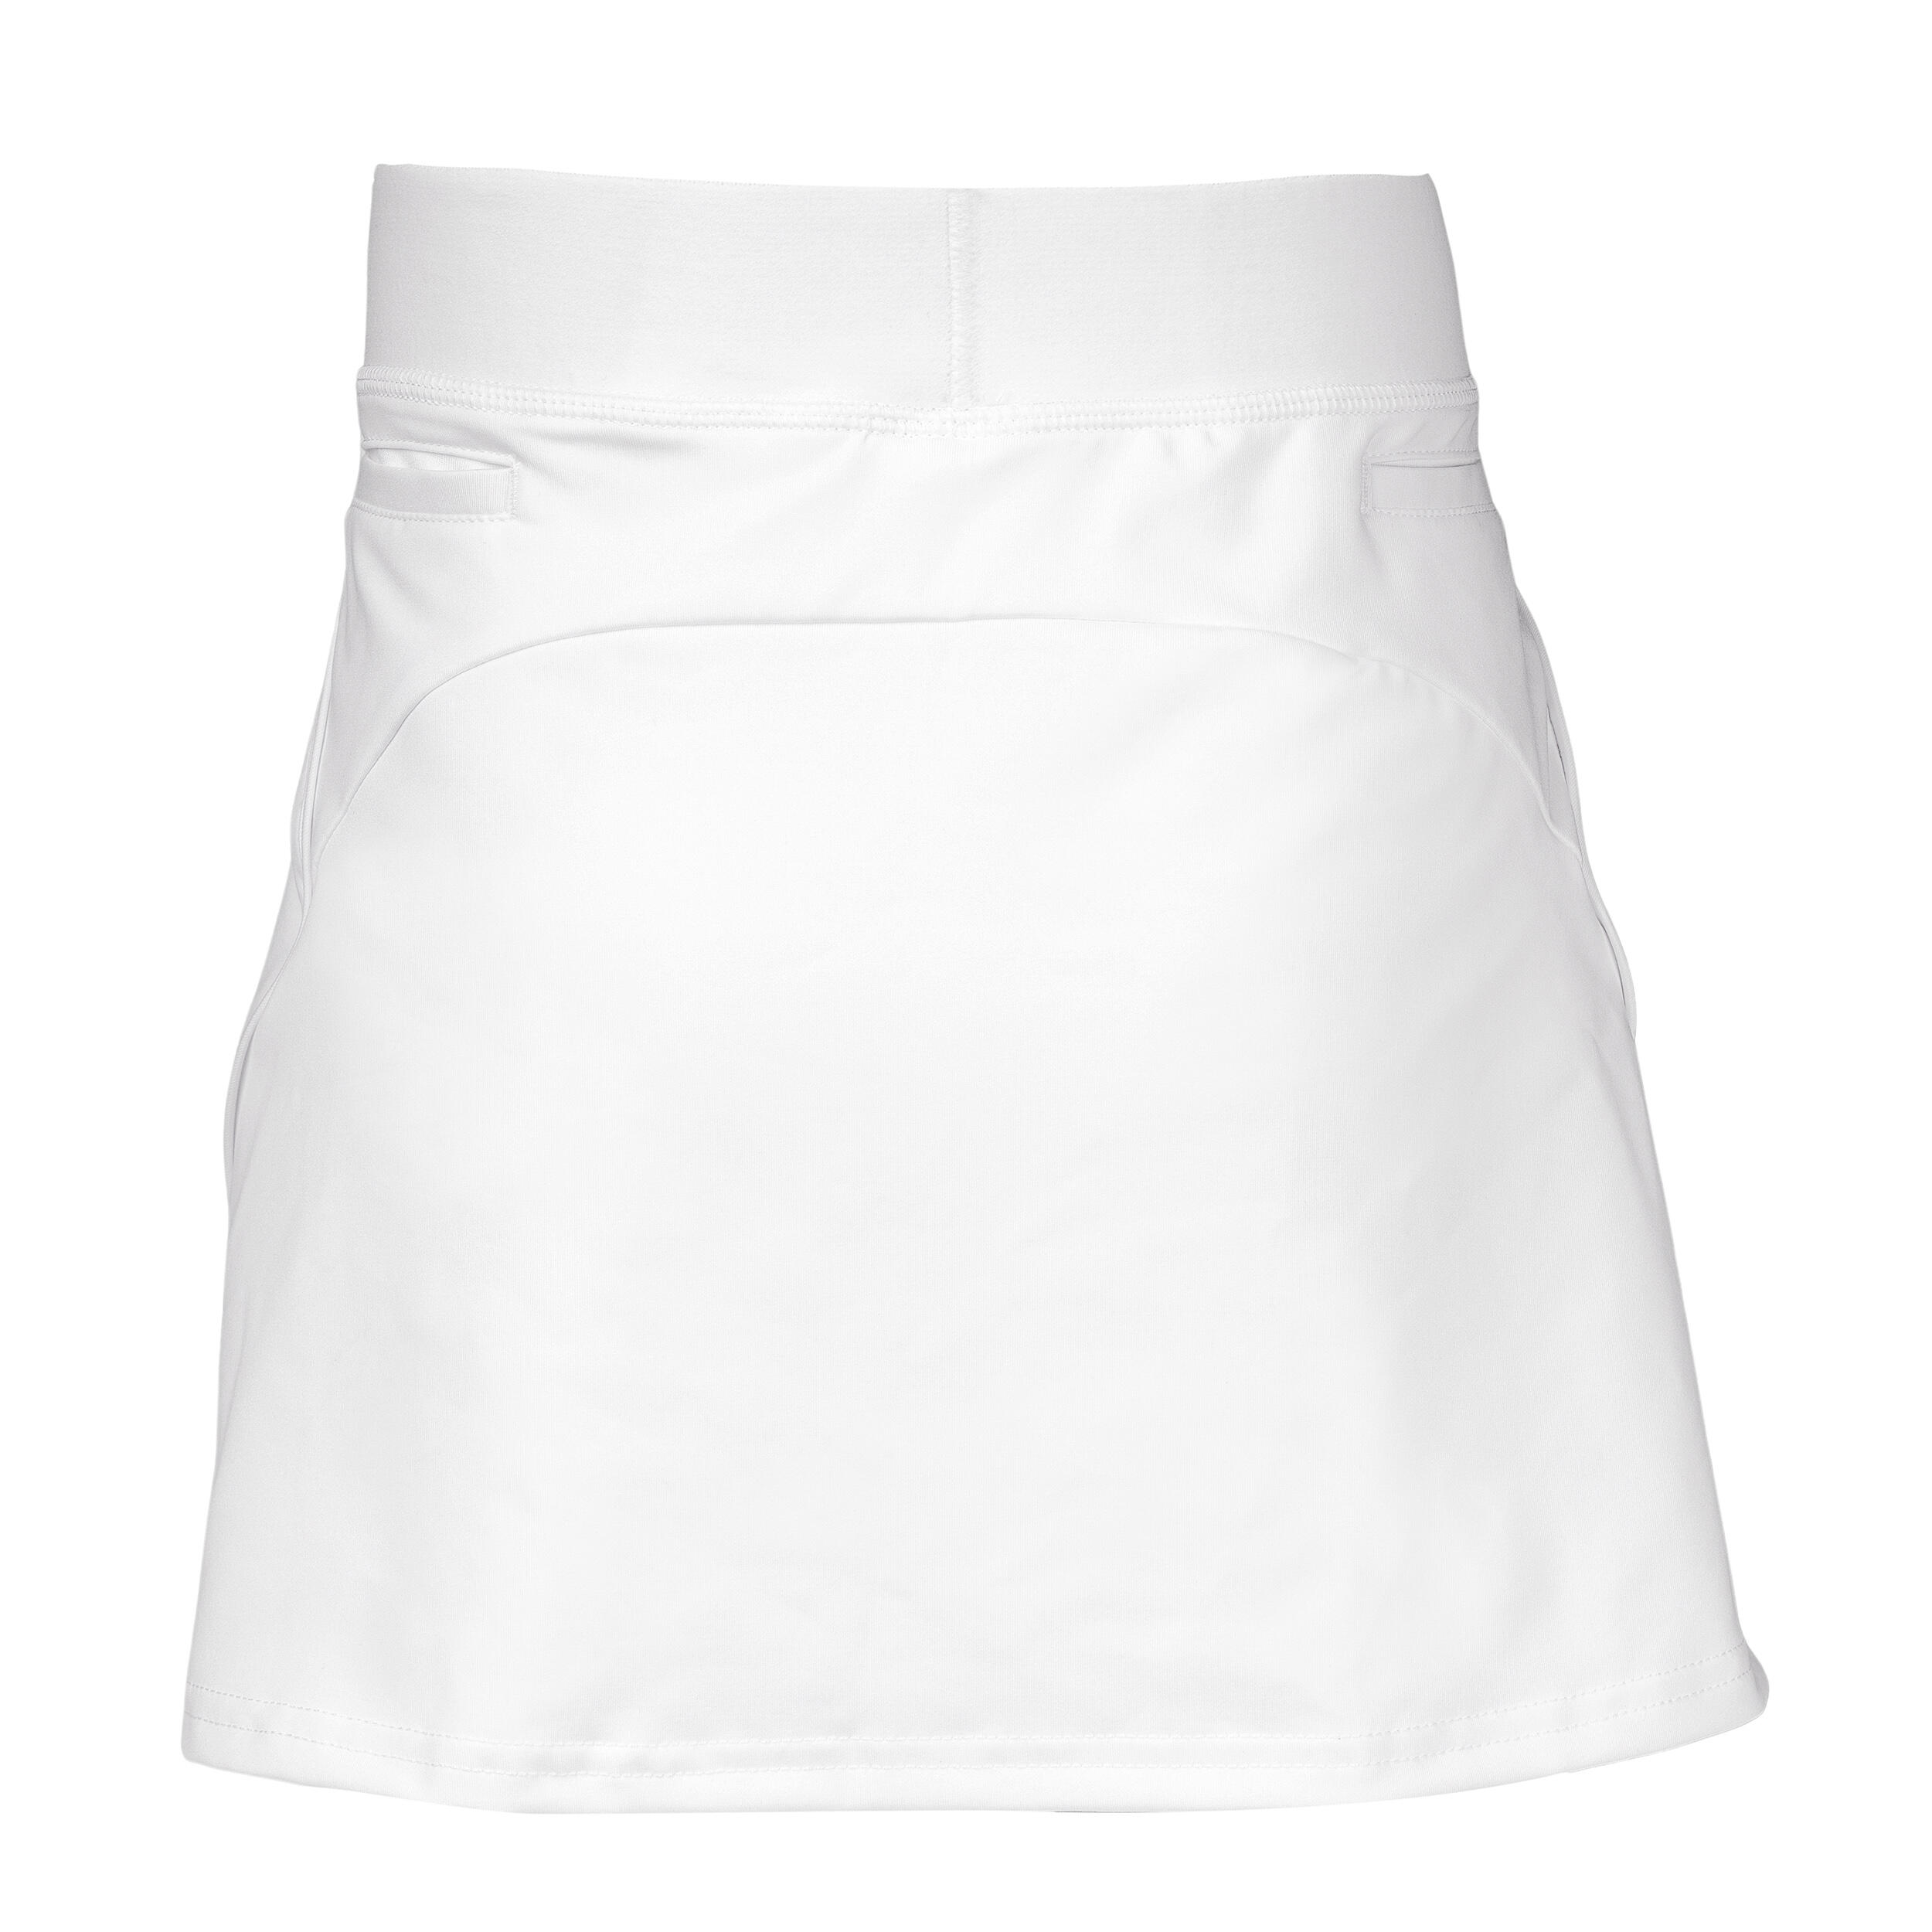 Women's High-Intensity Field Hockey Skirt FH900 - White 2/4